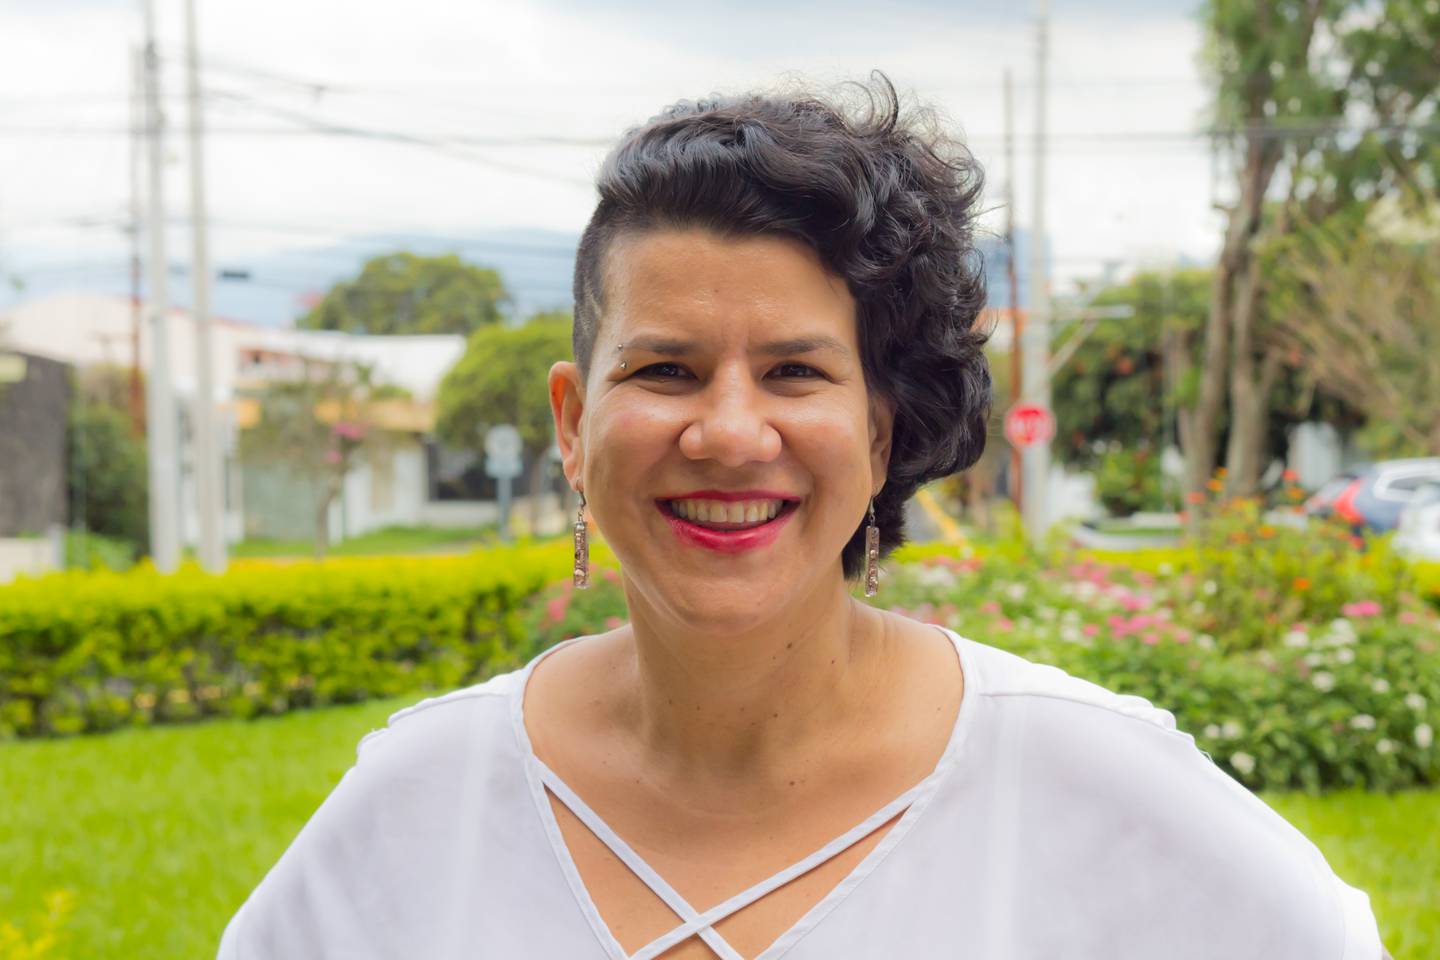 Margarita Salas, candidata por el partido Vamos. Foto cortesía Margarita Salas.